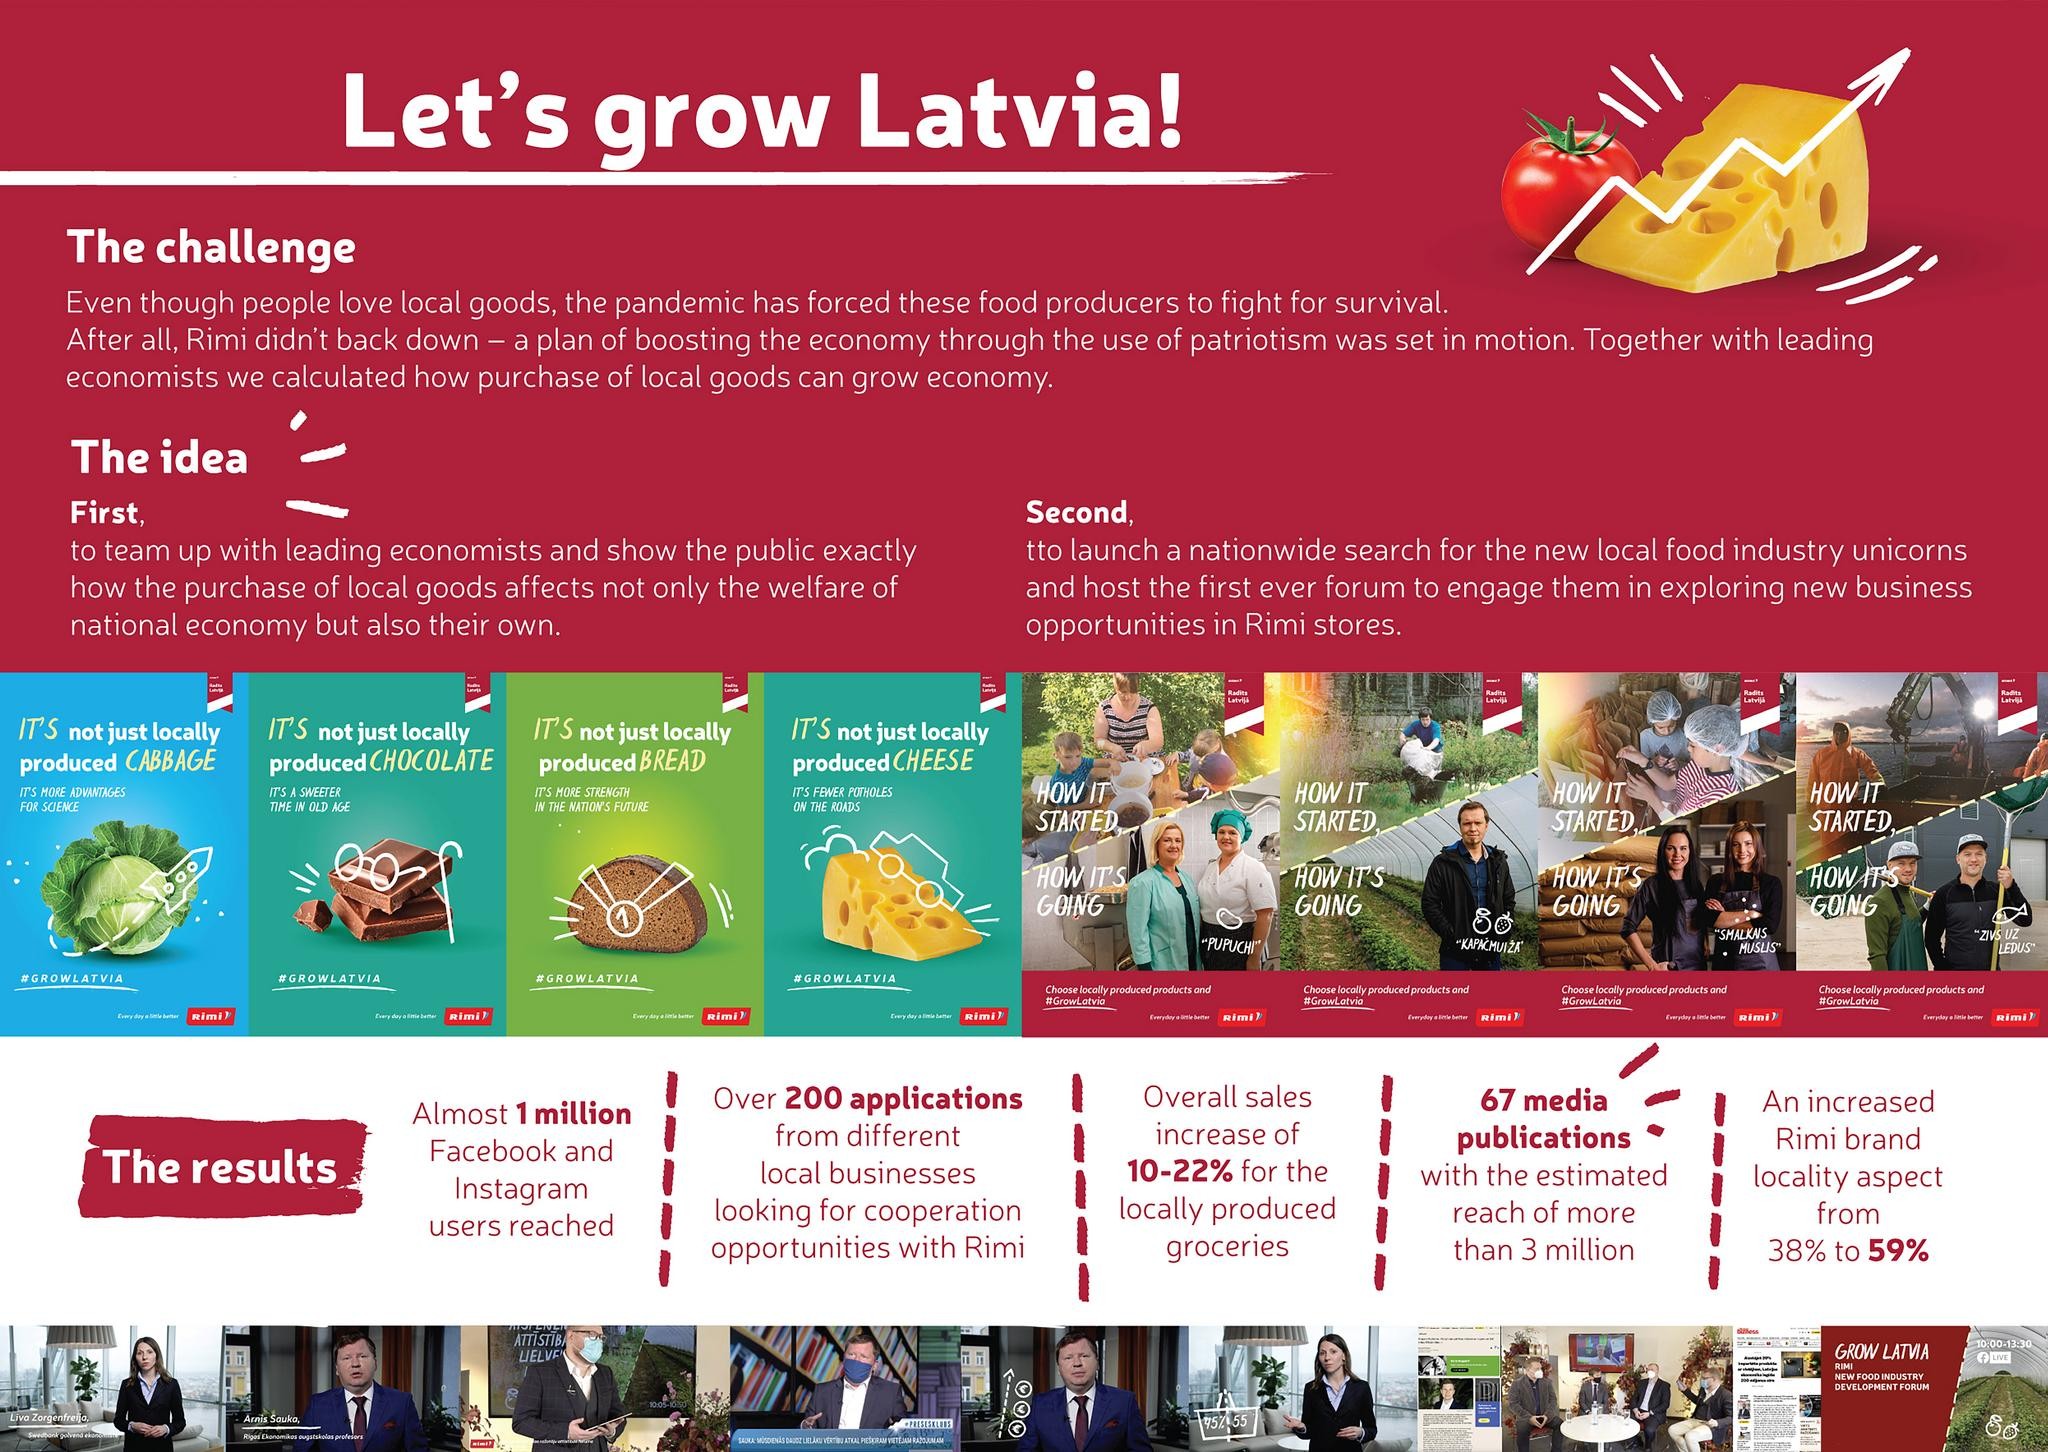 Let's Grow Latvia